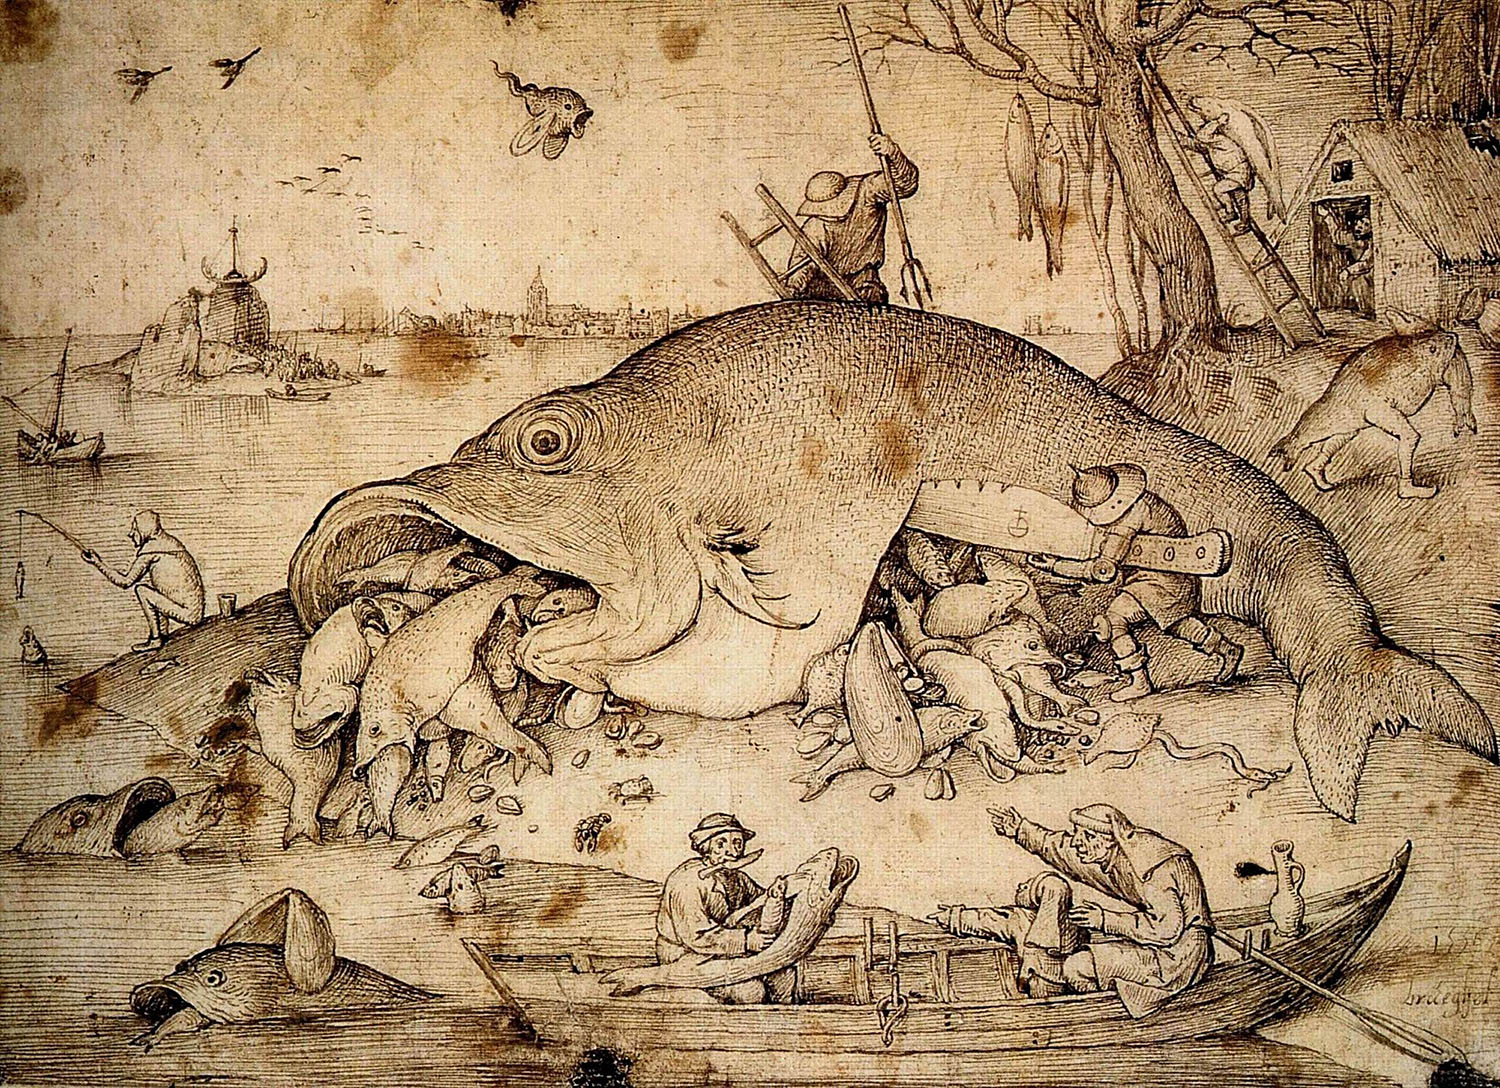 Питер Брейгель Старший. "Большие рыбы пожирают малых рыб". Рисунок. 1556.